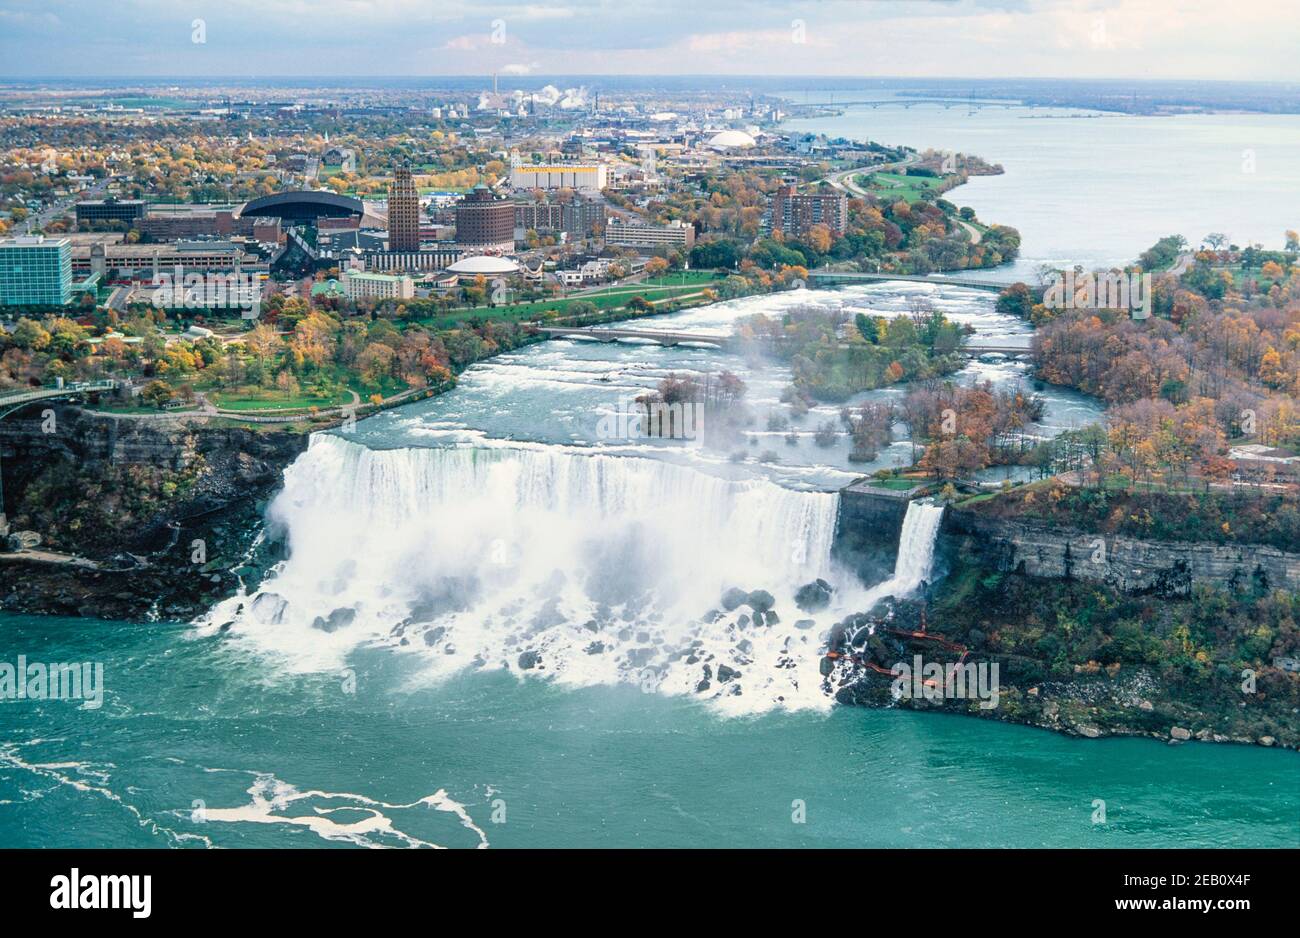 1995 Canada Niagara Falls è una città dell'Ontario, Canada. Si trova sulla riva occidentale del fiume Niagara nella regione del Golden Horseshoe nell'Ontario meridionale. Le American Falls sono la seconda delle tre cascate più grandi che insieme sono conosciute come Niagara Falls sul fiume Niagara lungo il confine tra Canada e Stati Uniti. Bridal Veil Falls è separato dalle Horseshoe Falls da Goat Island e dalle American Falls da Luna Island. Le cascate sono visibili dalla piattaforma di osservazione della Skylon Tower sul lato canadese del fiume Niagara Niagara Niagara Falls Ontario Canada Foto Stock